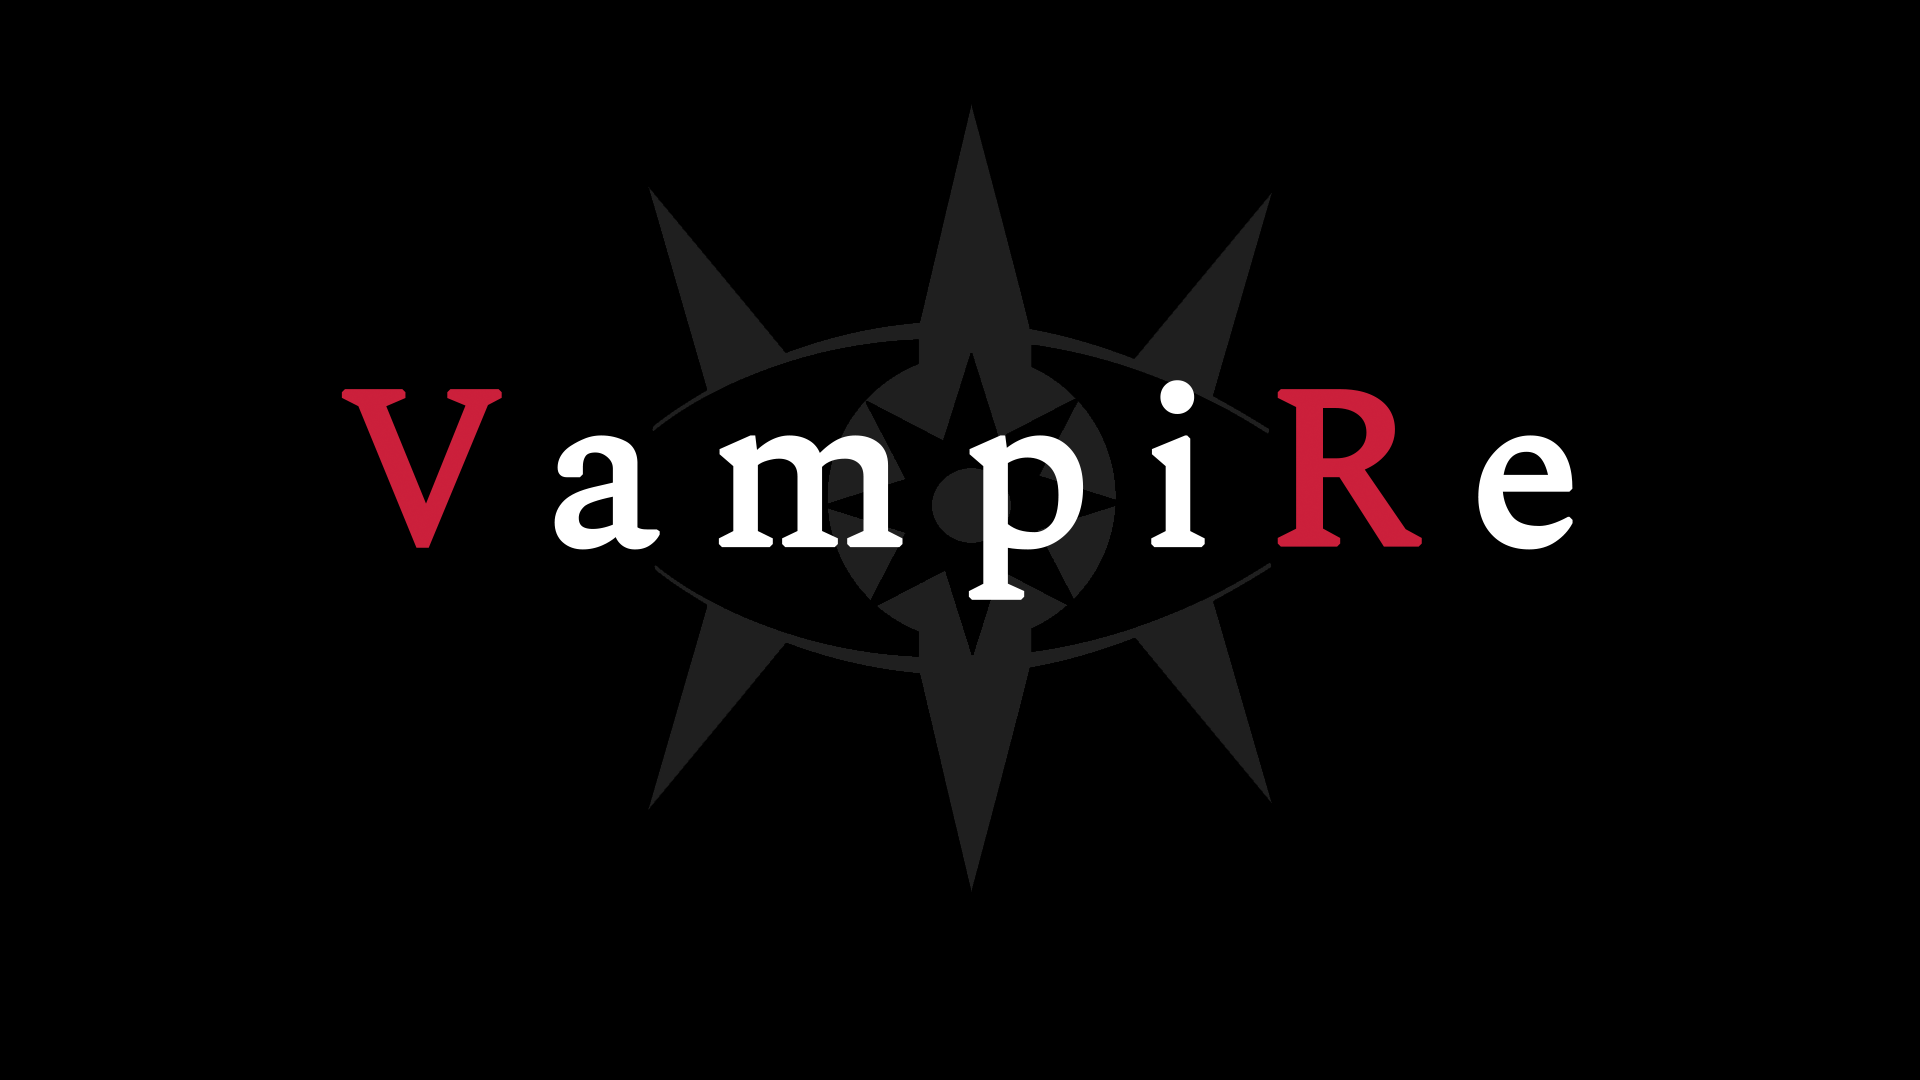 VampiRe